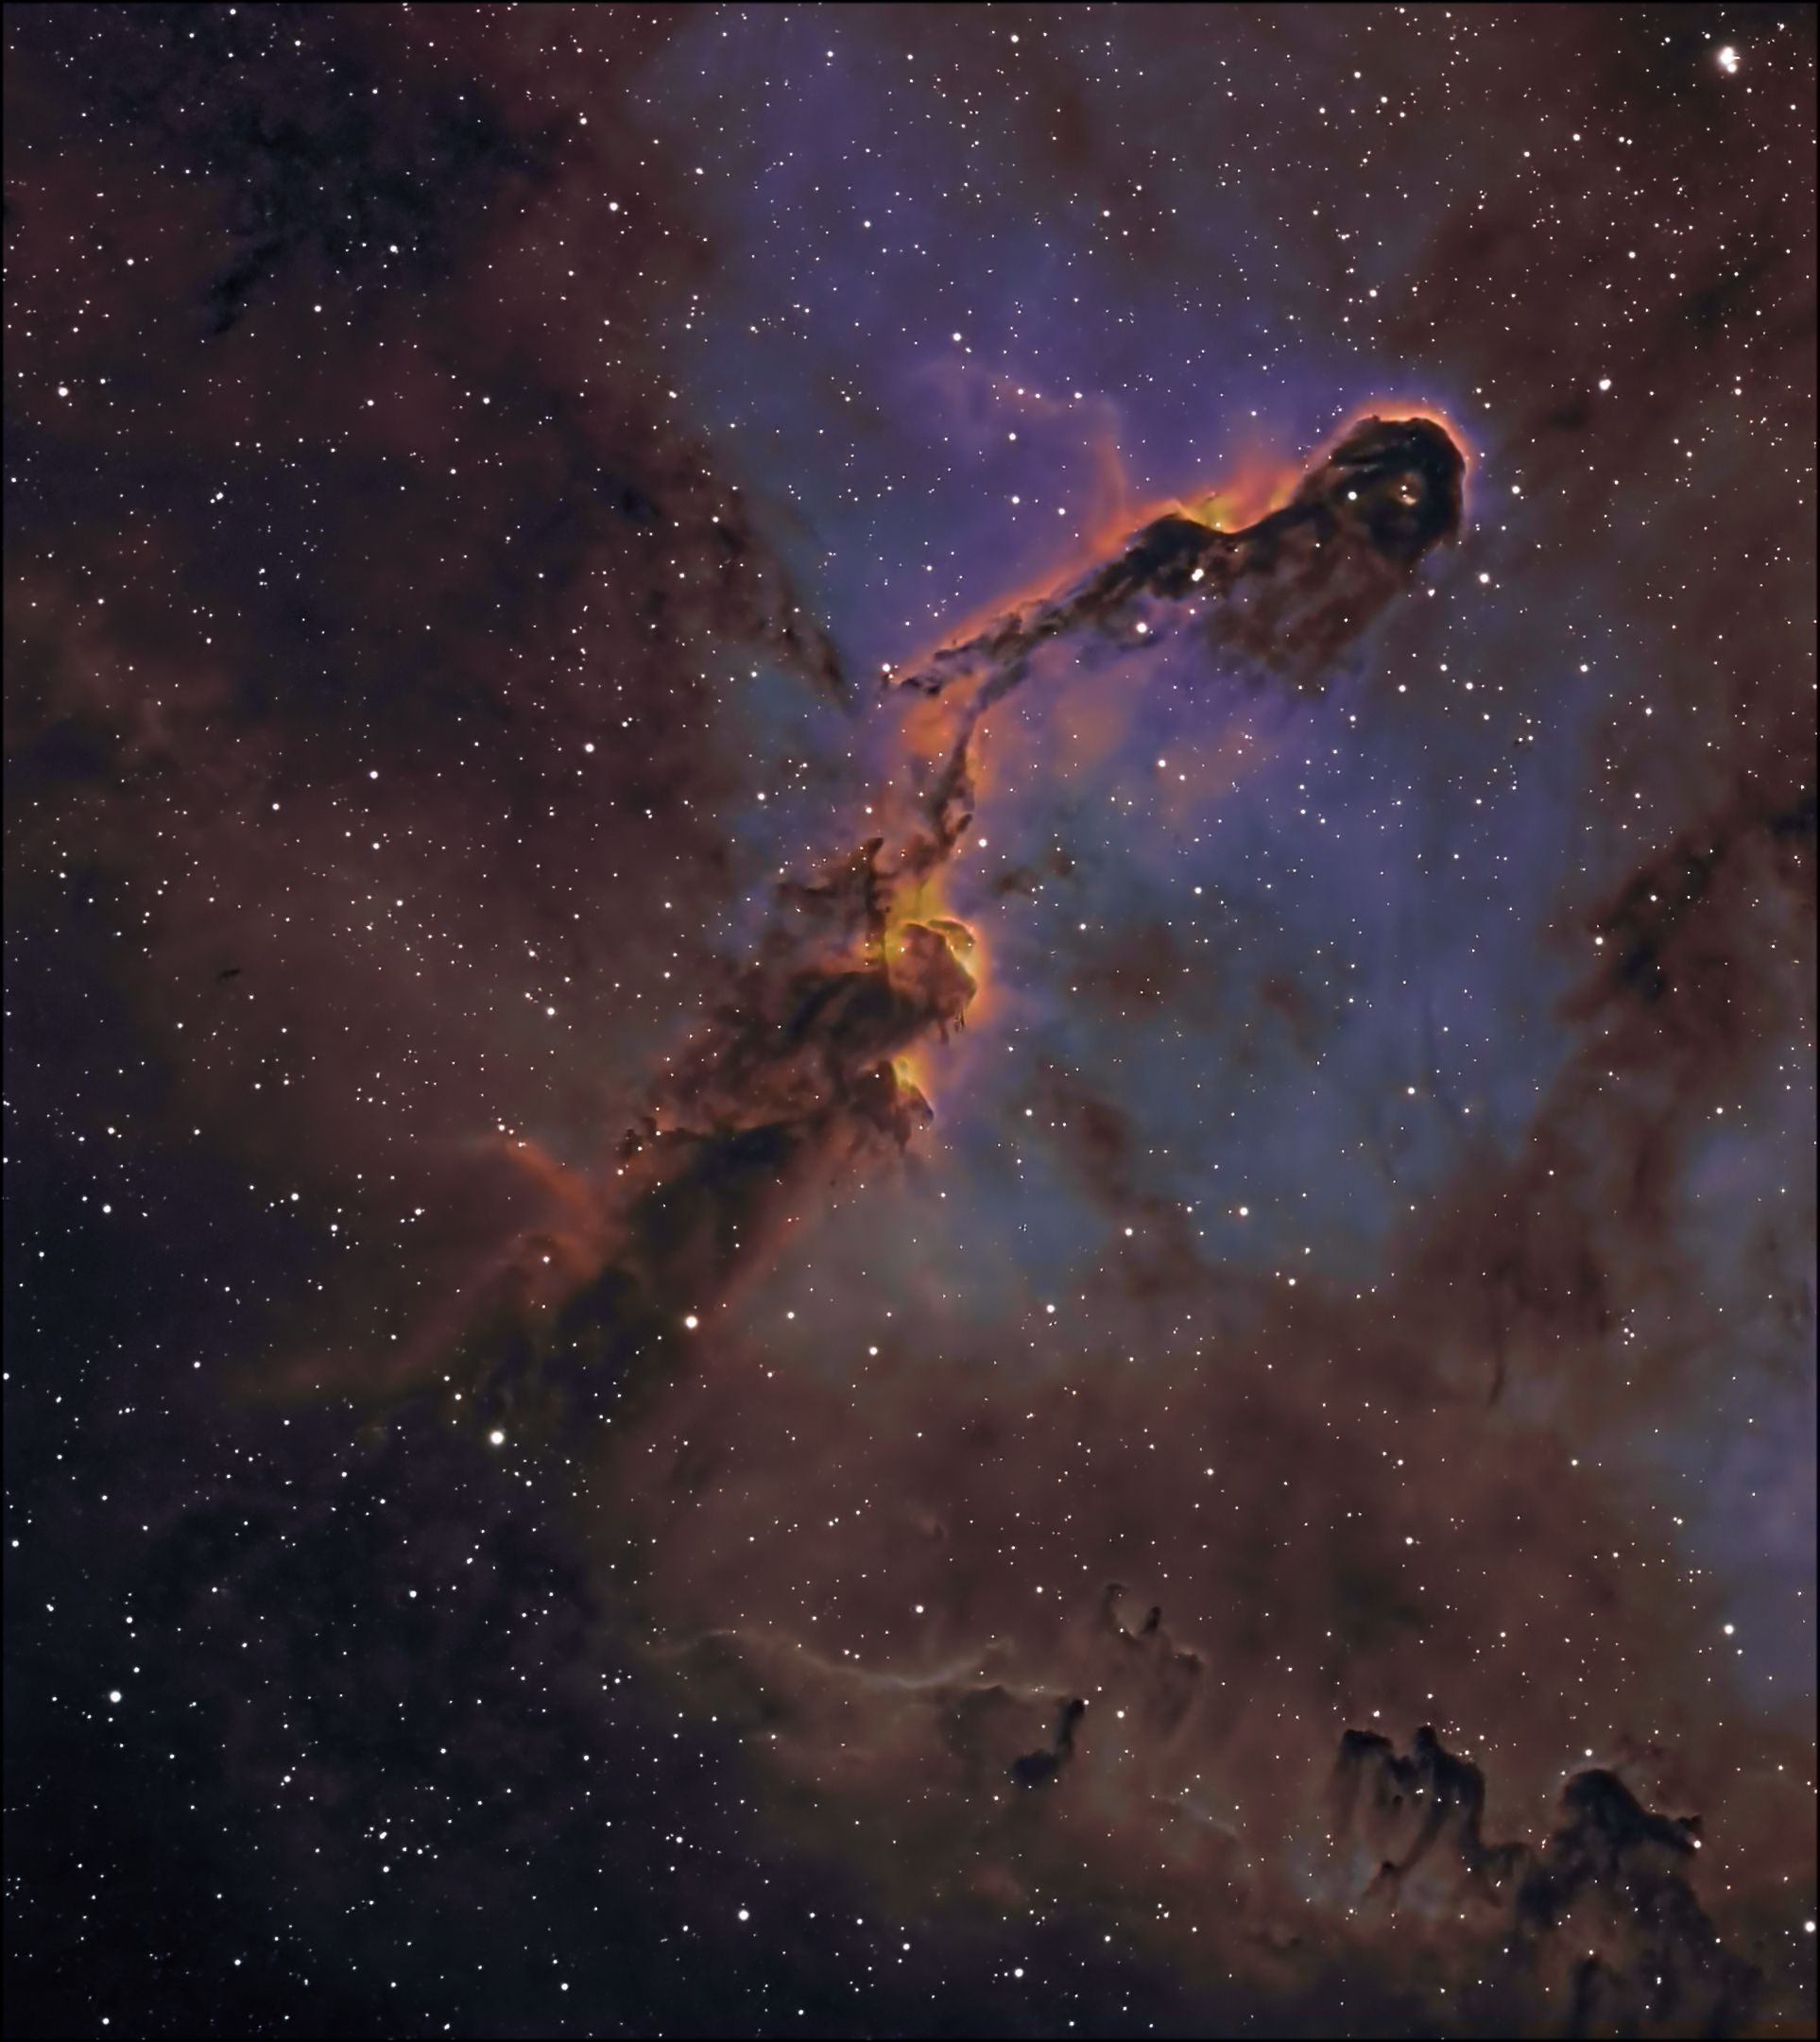 IC 1396